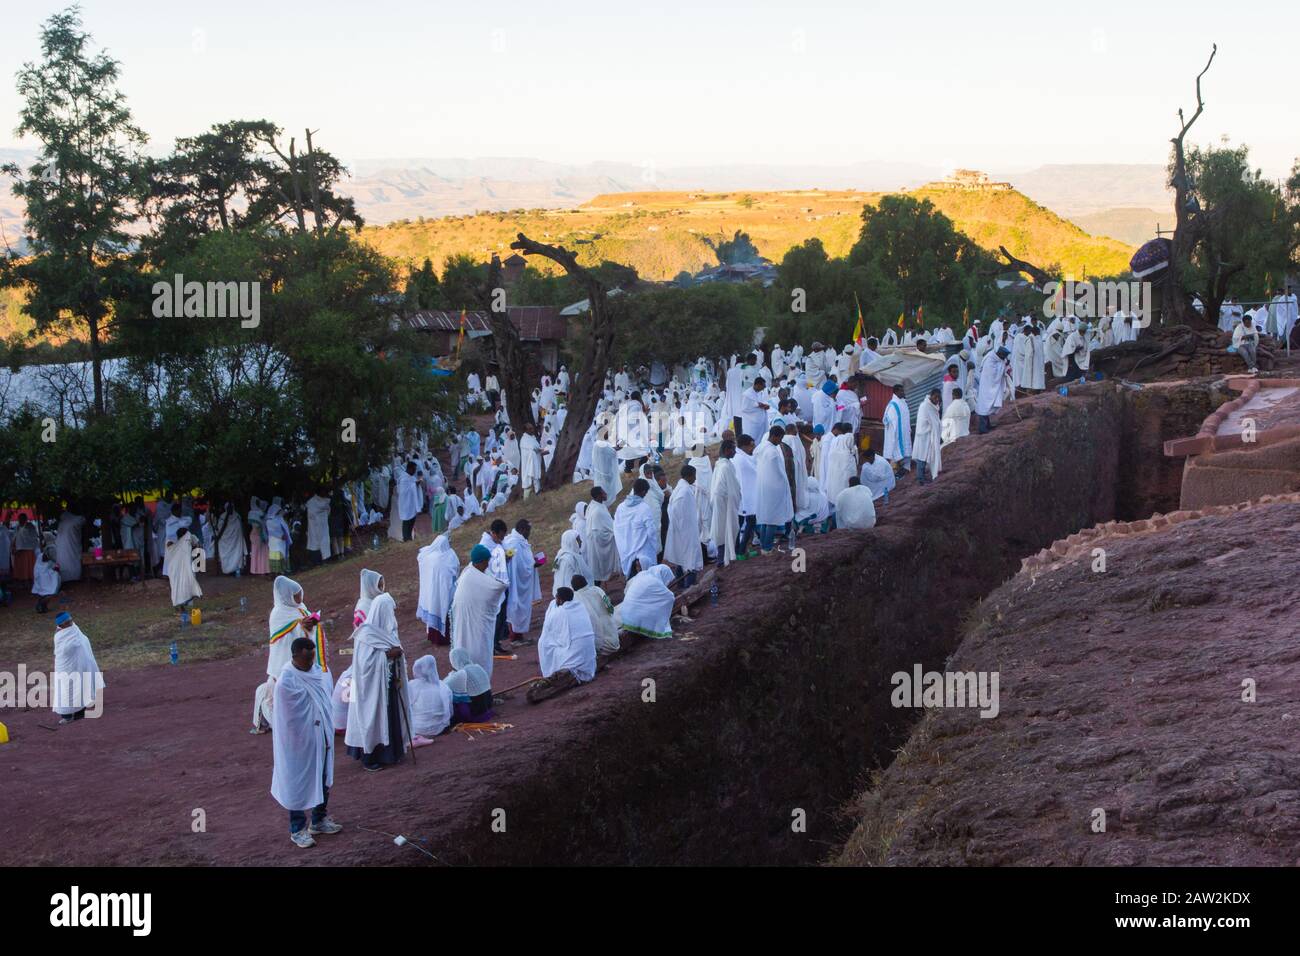 Lalibela, Ethiopia - Nov 2018: Pilgrims dressed in traditional ethiopian white colors gathering outside the Lalibela underground churches. Stock Photo